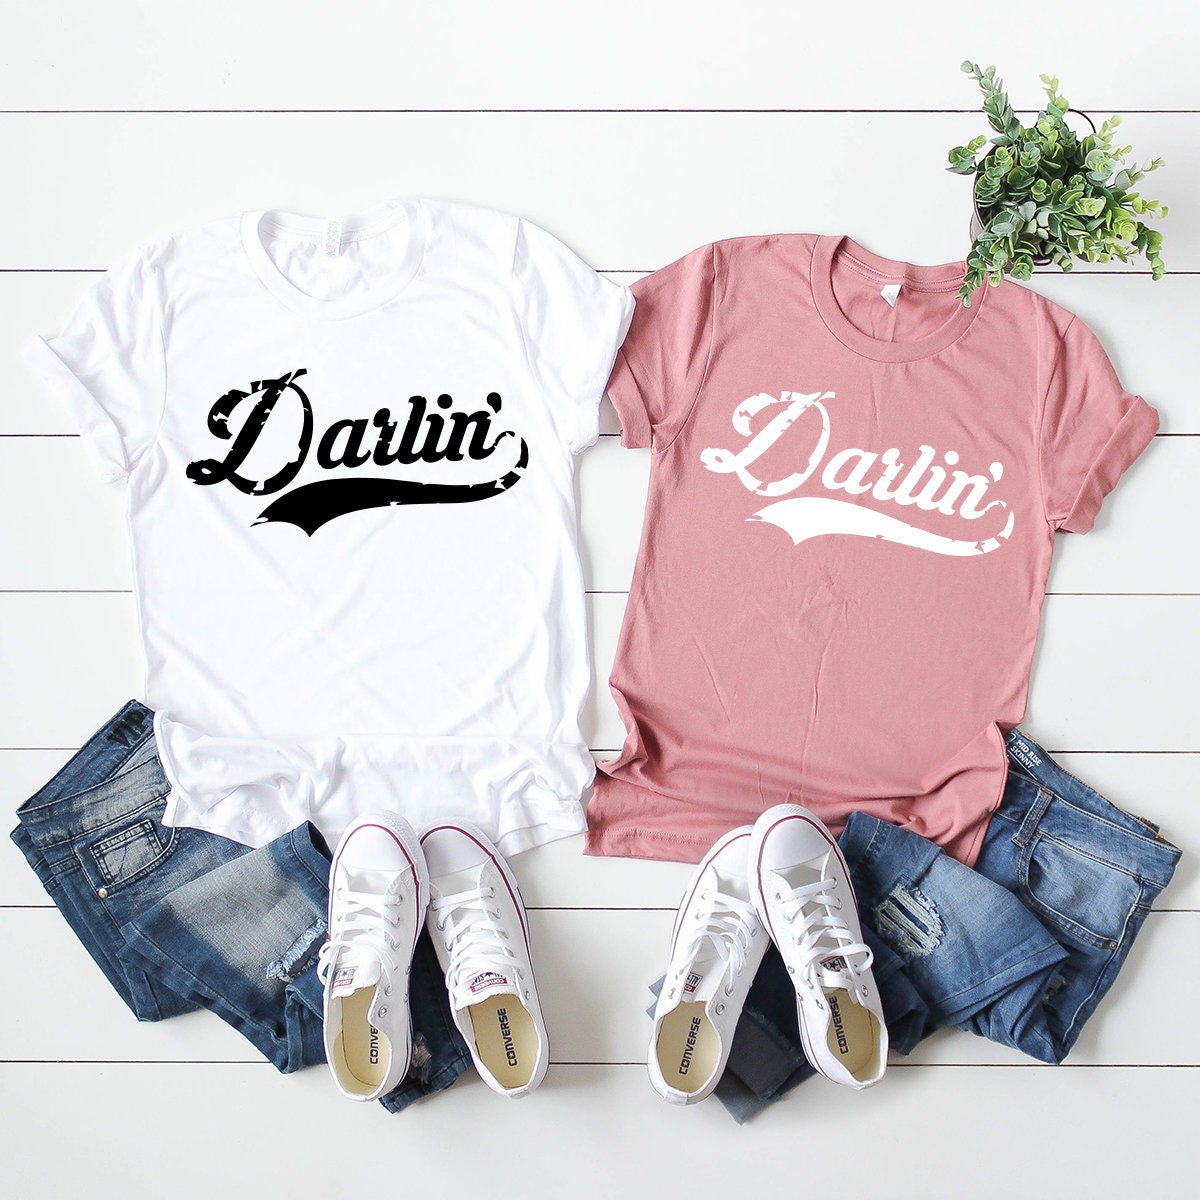 Darlin Shirt, Darlin' T-Shirt, Southern Shirt, Southern Tee, Western Shirt, Darlin' Graphic Tee, Country Music Shirt, Concert Shirt - Fastdeliverytees.com